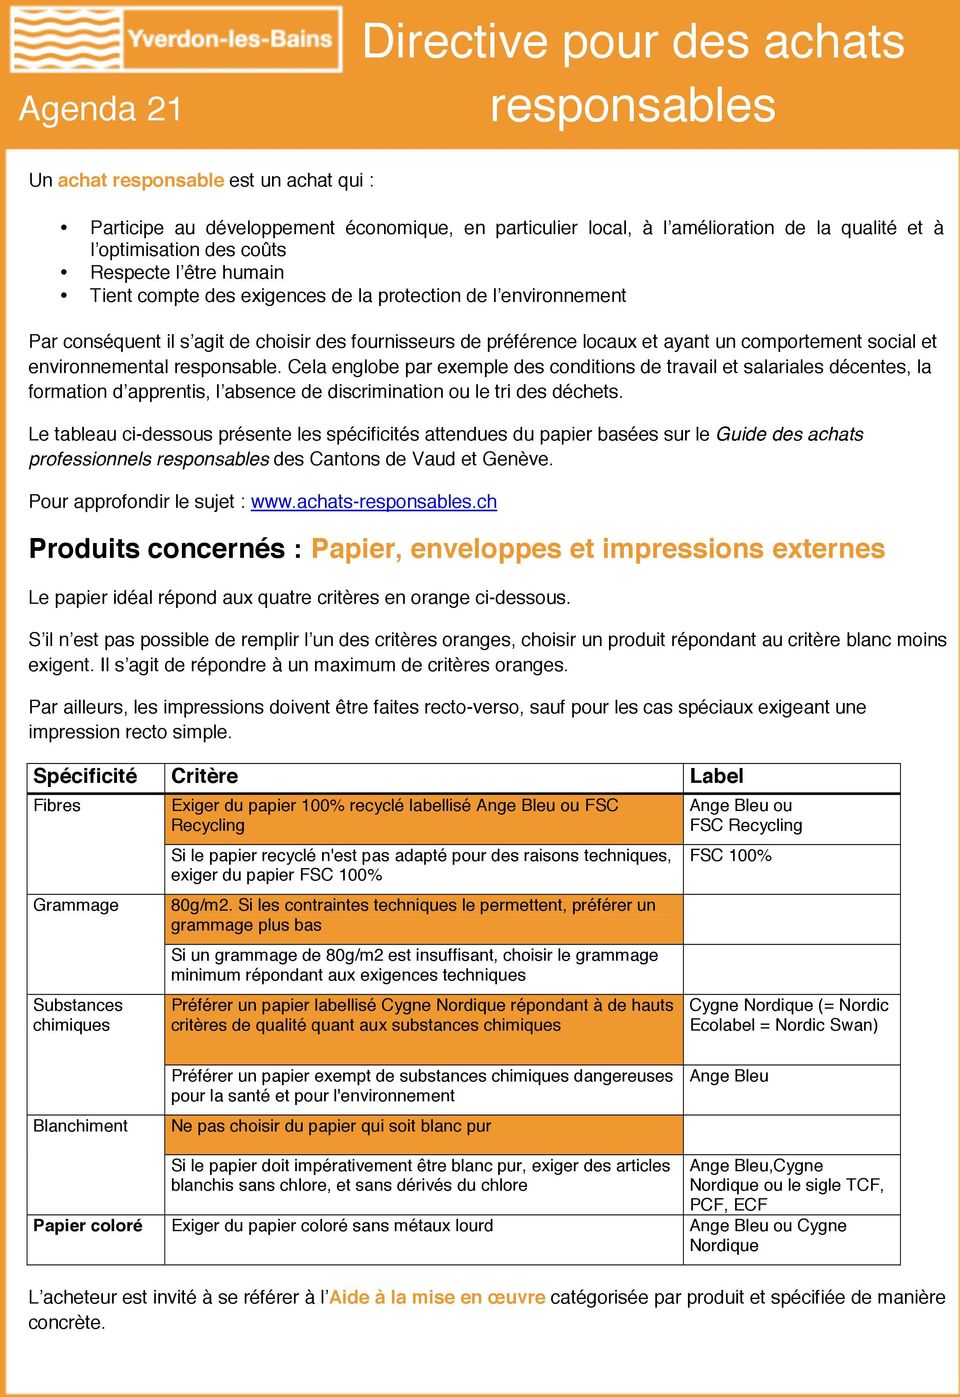 Le tableau ci-dessous présente les spécificités attendues du papier basées sur le Guide des achats professionnels des Cantons de Vaud et Genève.